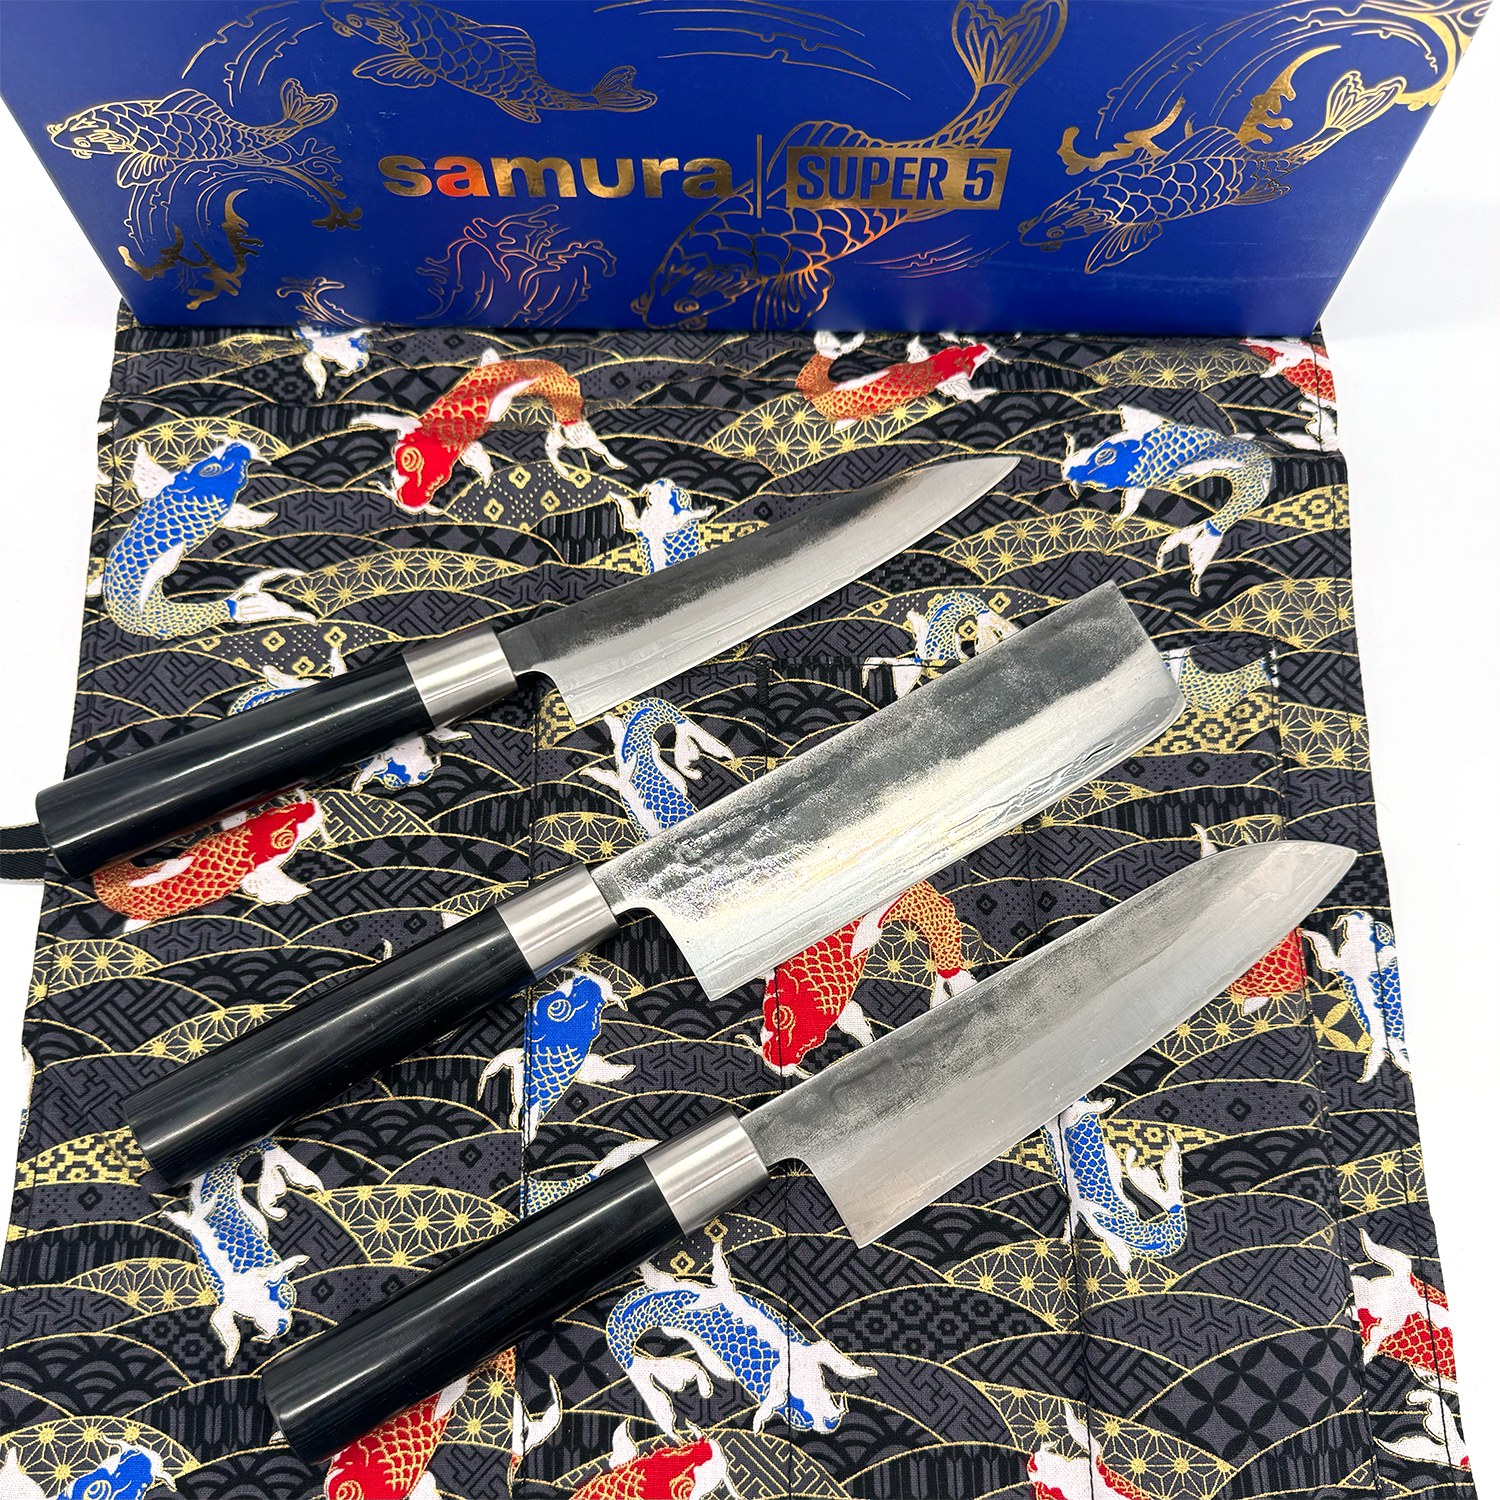 Cuchillo japonés para verdura BUNKA martillado - con saya magnética y caja  de regalo - hoja 9 cm